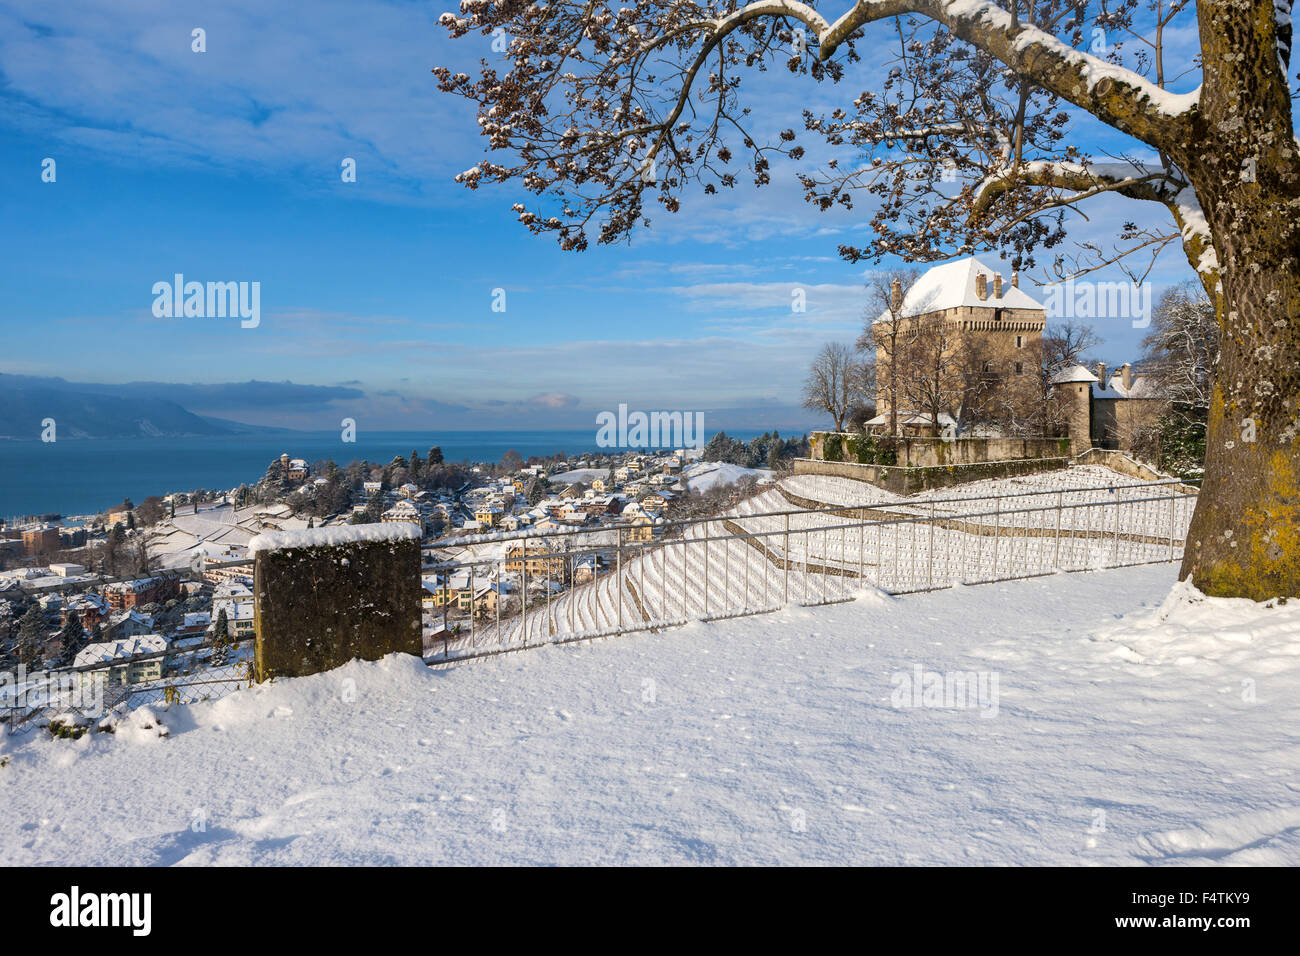 Il castello di Châtelard, Chatelard, Svizzera, del cantone di Vaud, sul lago di Ginevra, Leman, inverno Foto Stock